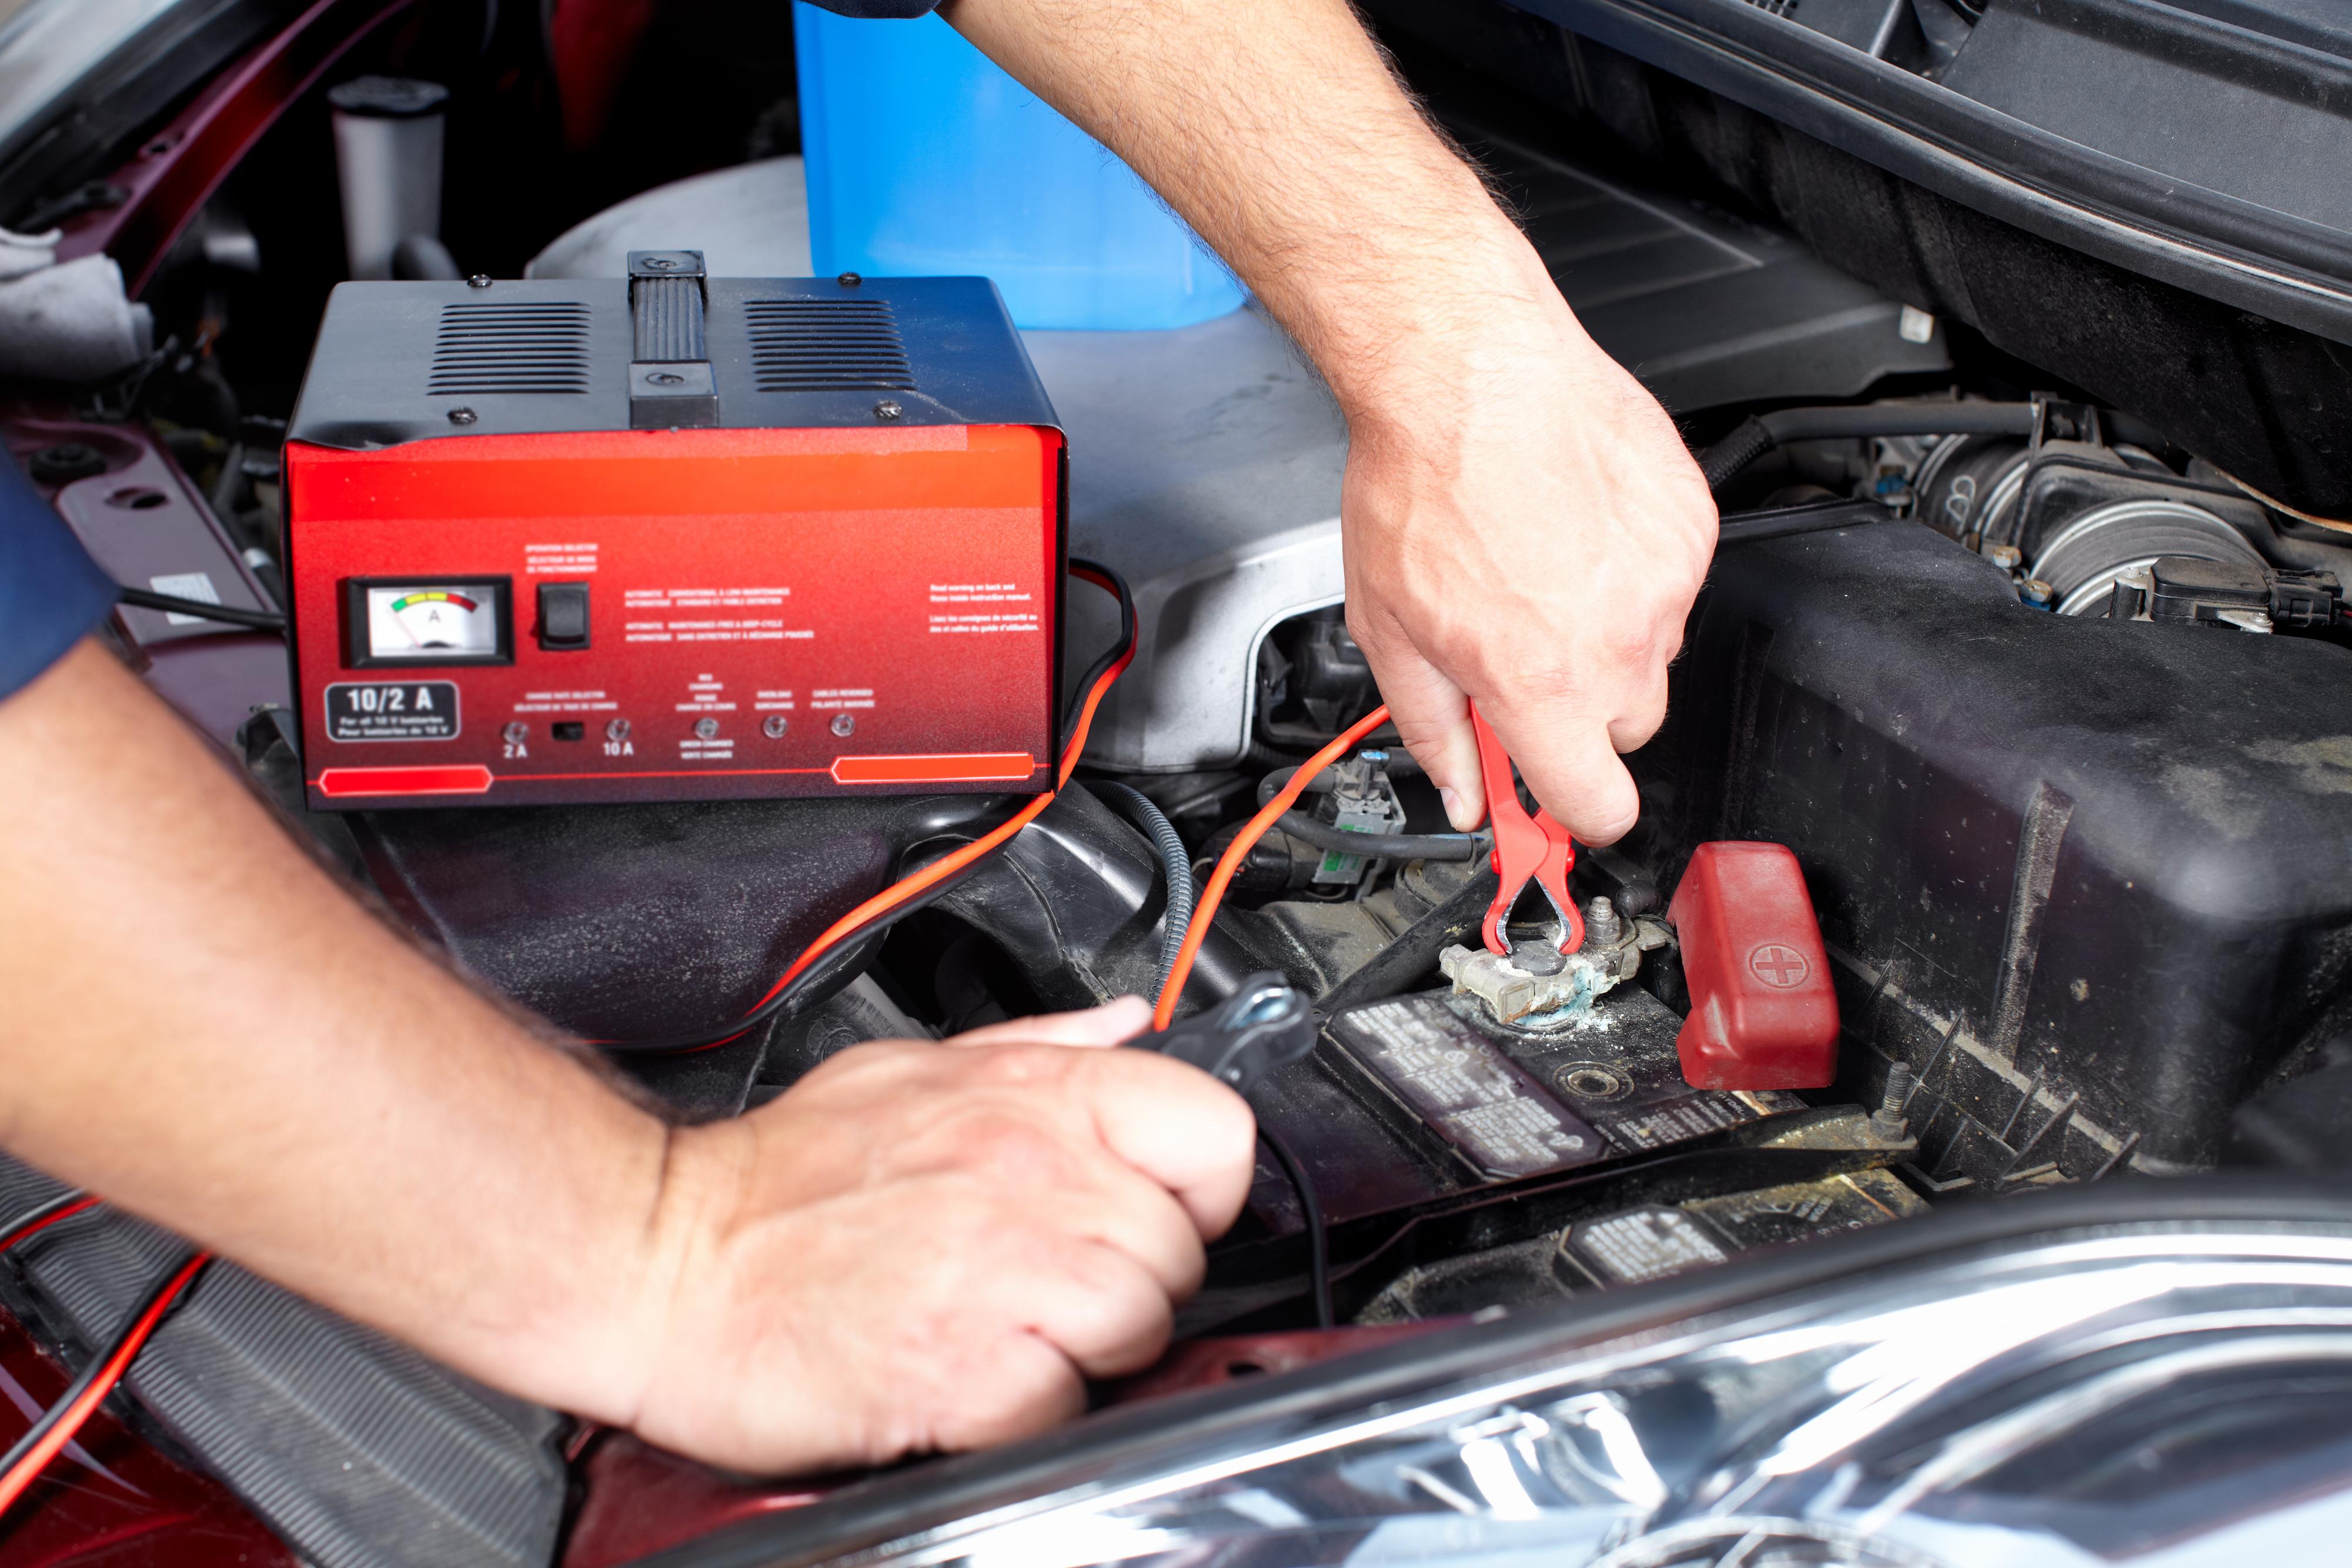 Man må fortsatt være litt varsom med lading av startbatterier i bil. Men en elektronisk styrt lader gjør vedlikeholdet vesentlig enklere. Foto: kurhan / Shutterstock.com